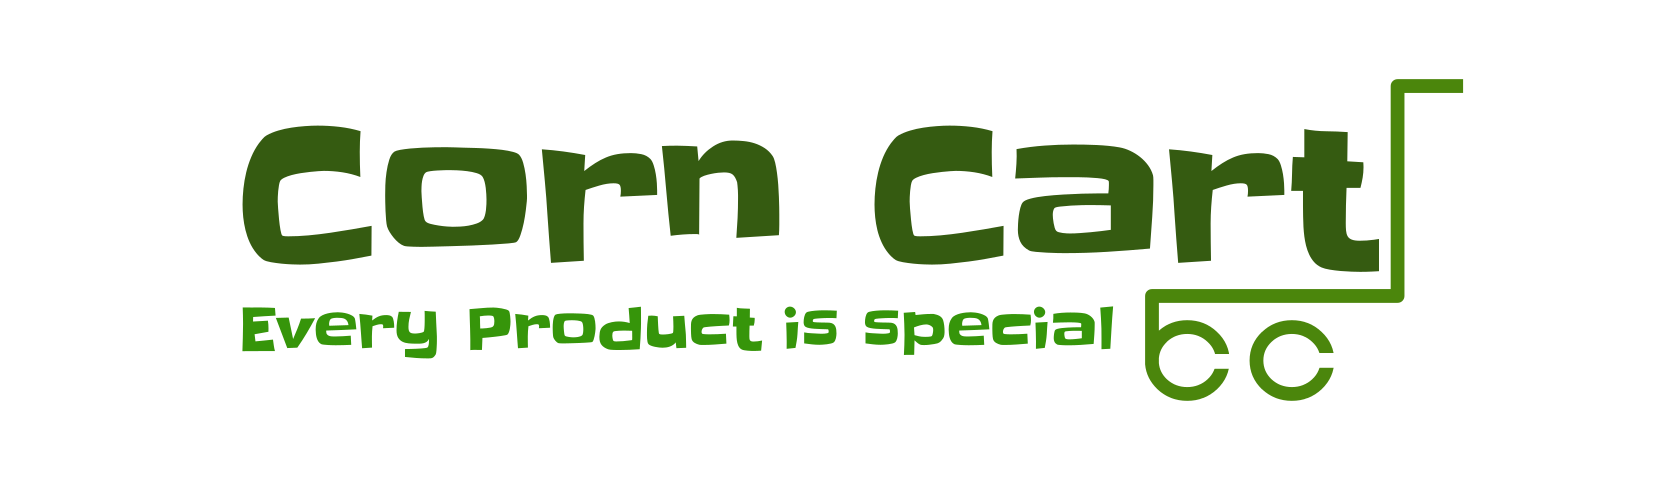 Corncart– Corn Cart